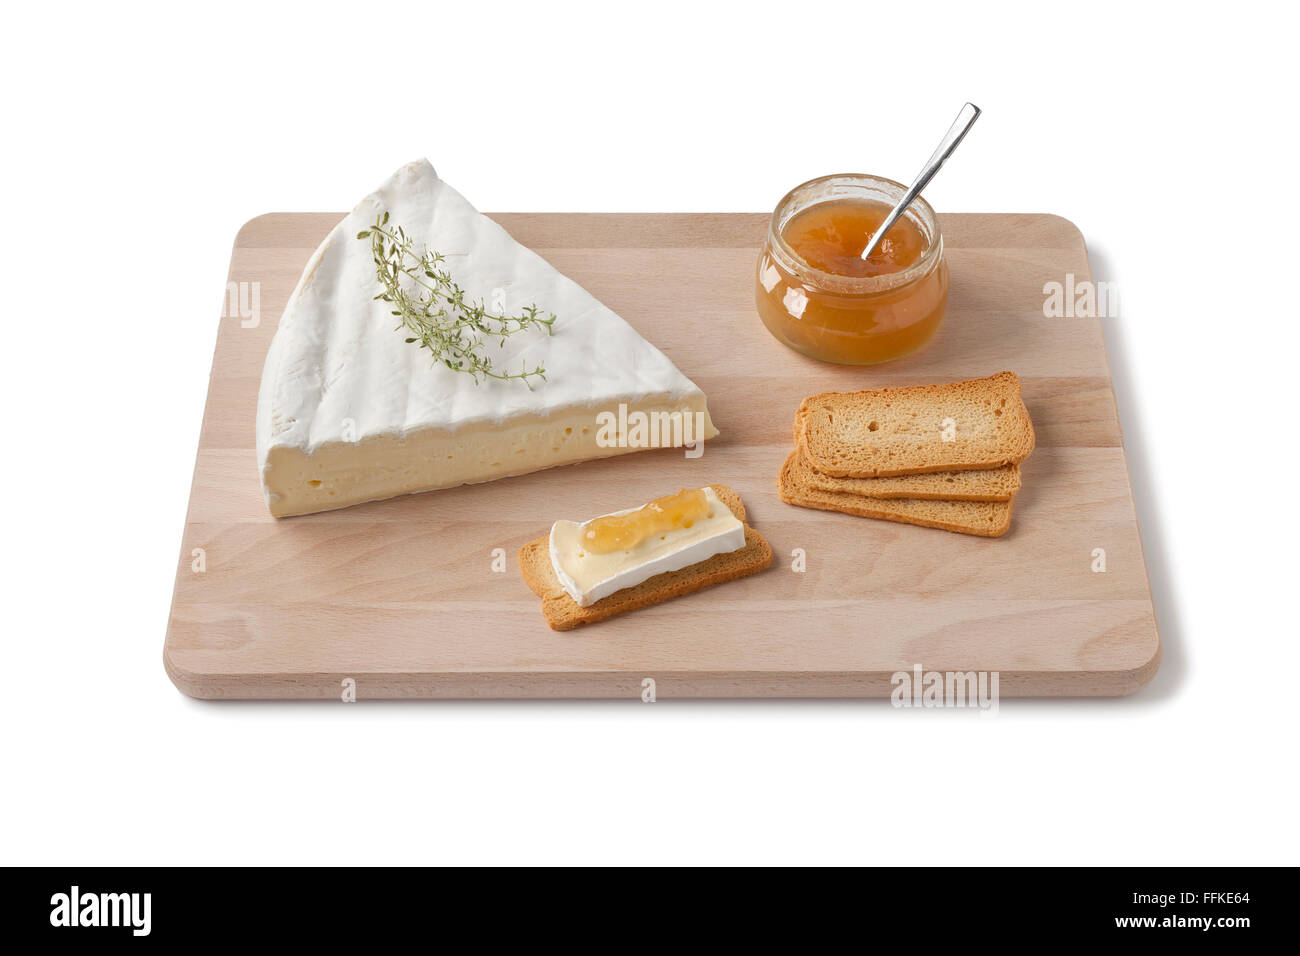 Fromage Brie au thym, pain grillé et sauce aux fruits en dessert sur une planche en bois sur fond blanc Banque D'Images